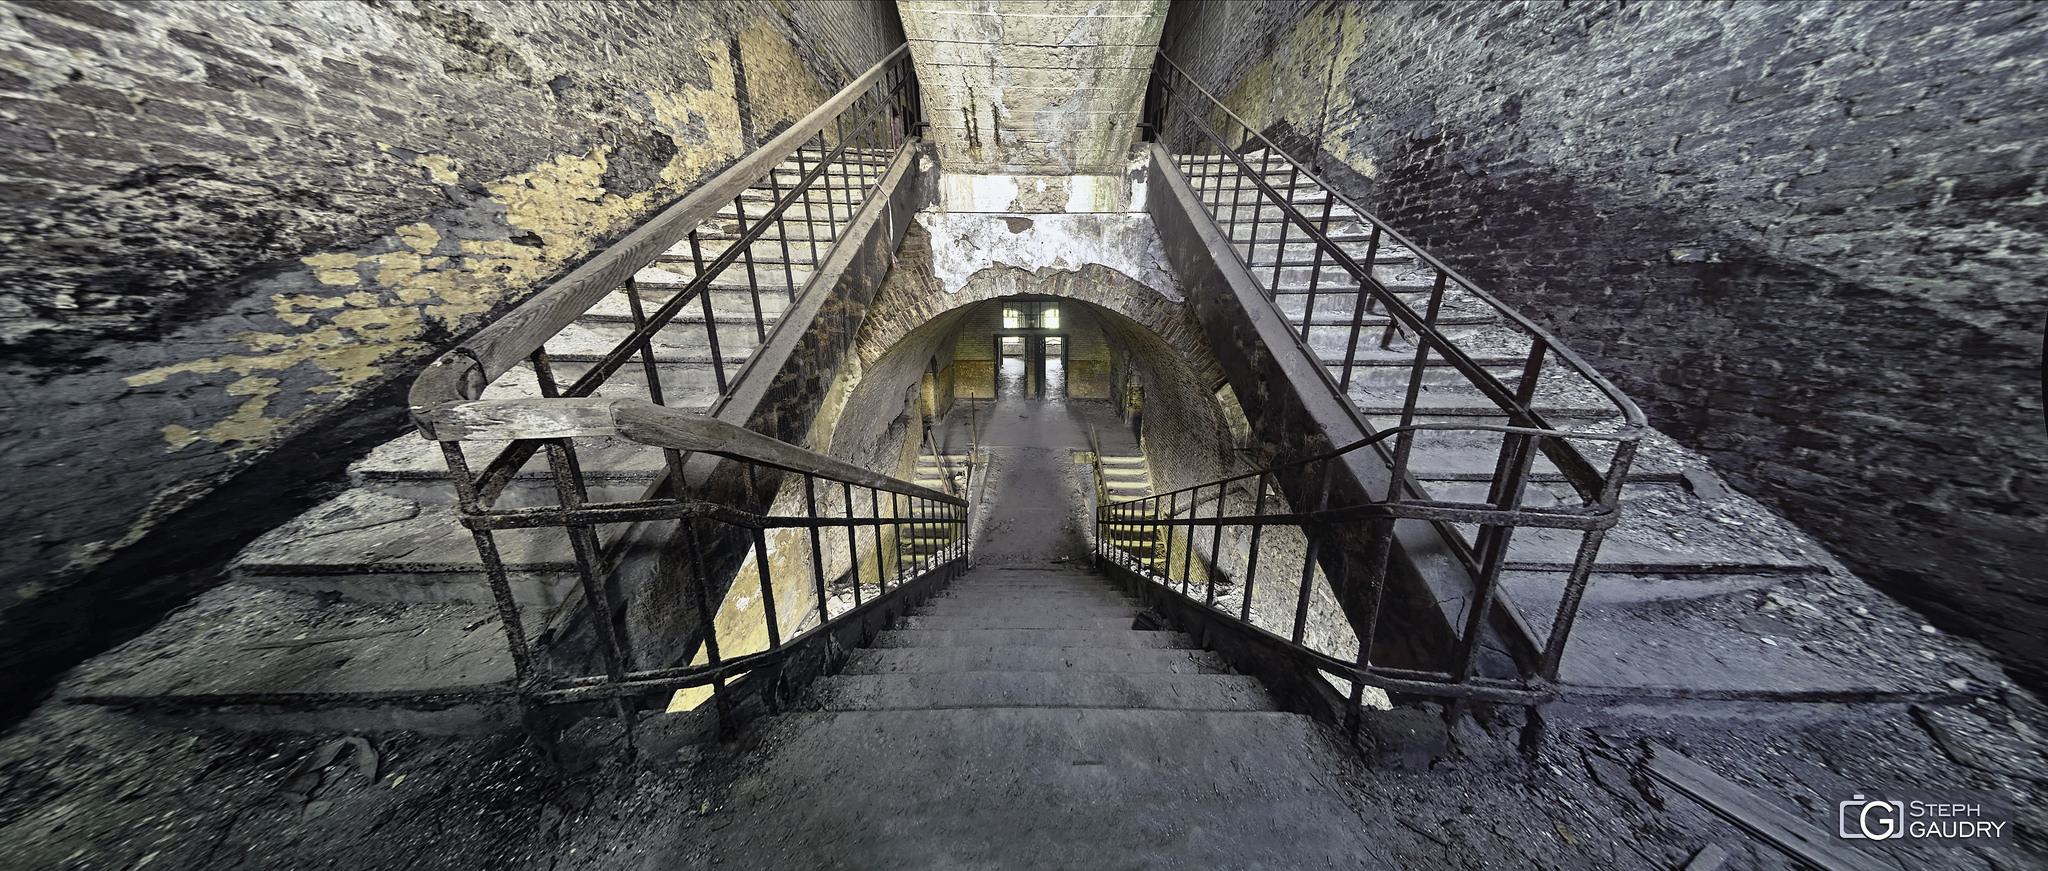 Fort de la chartreuse / Chartreuse  Escaliers 1-2-1